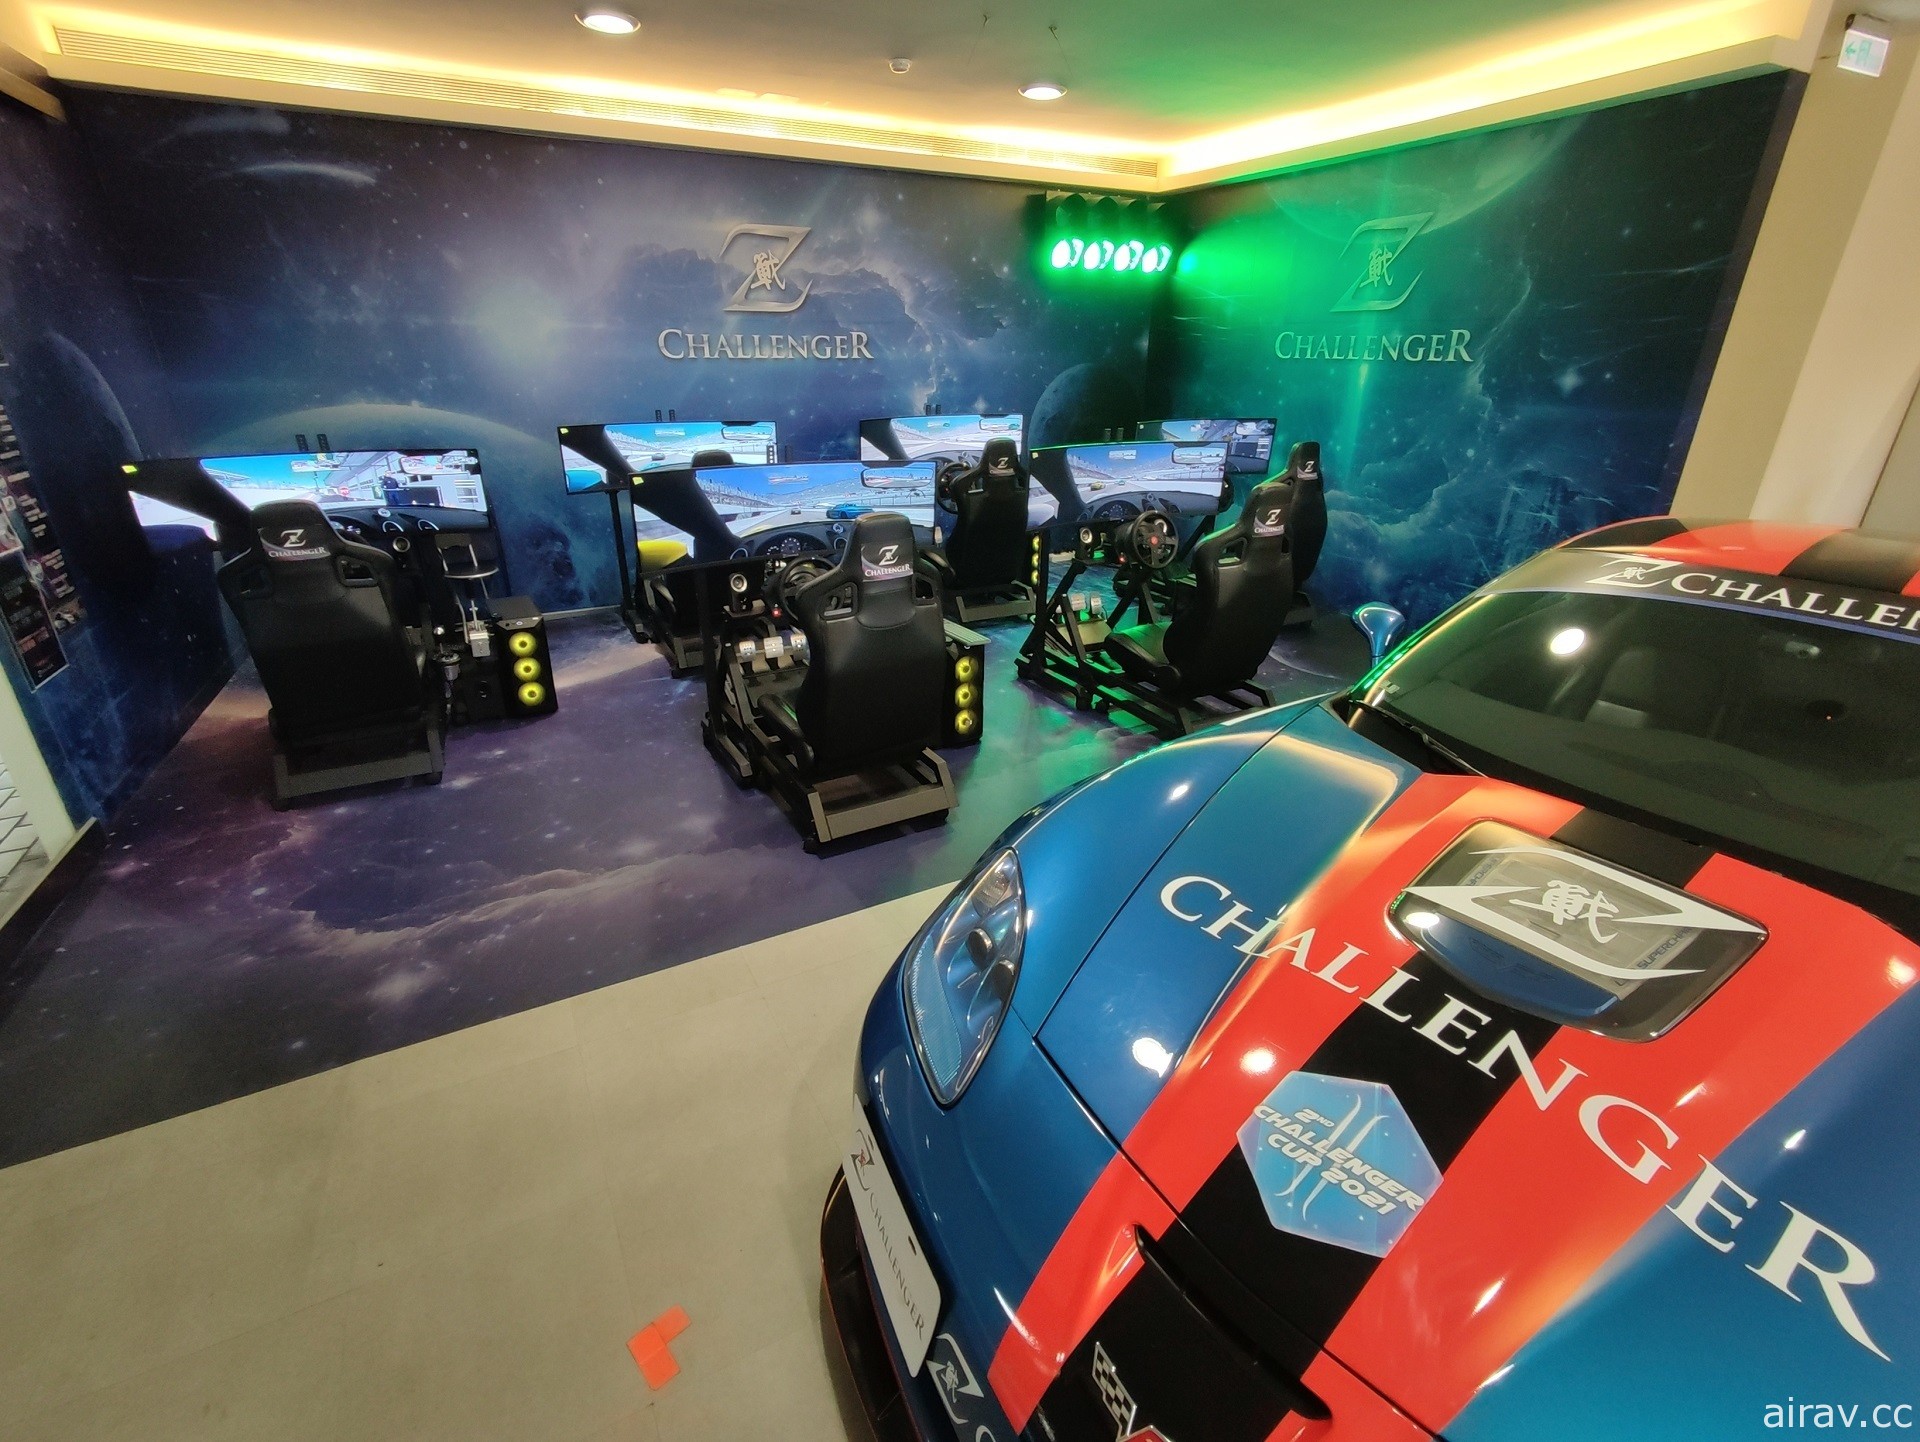 賽車電競賽事「Z-Challenger 虎年盃極速挑戰賽」預定 15 日登場